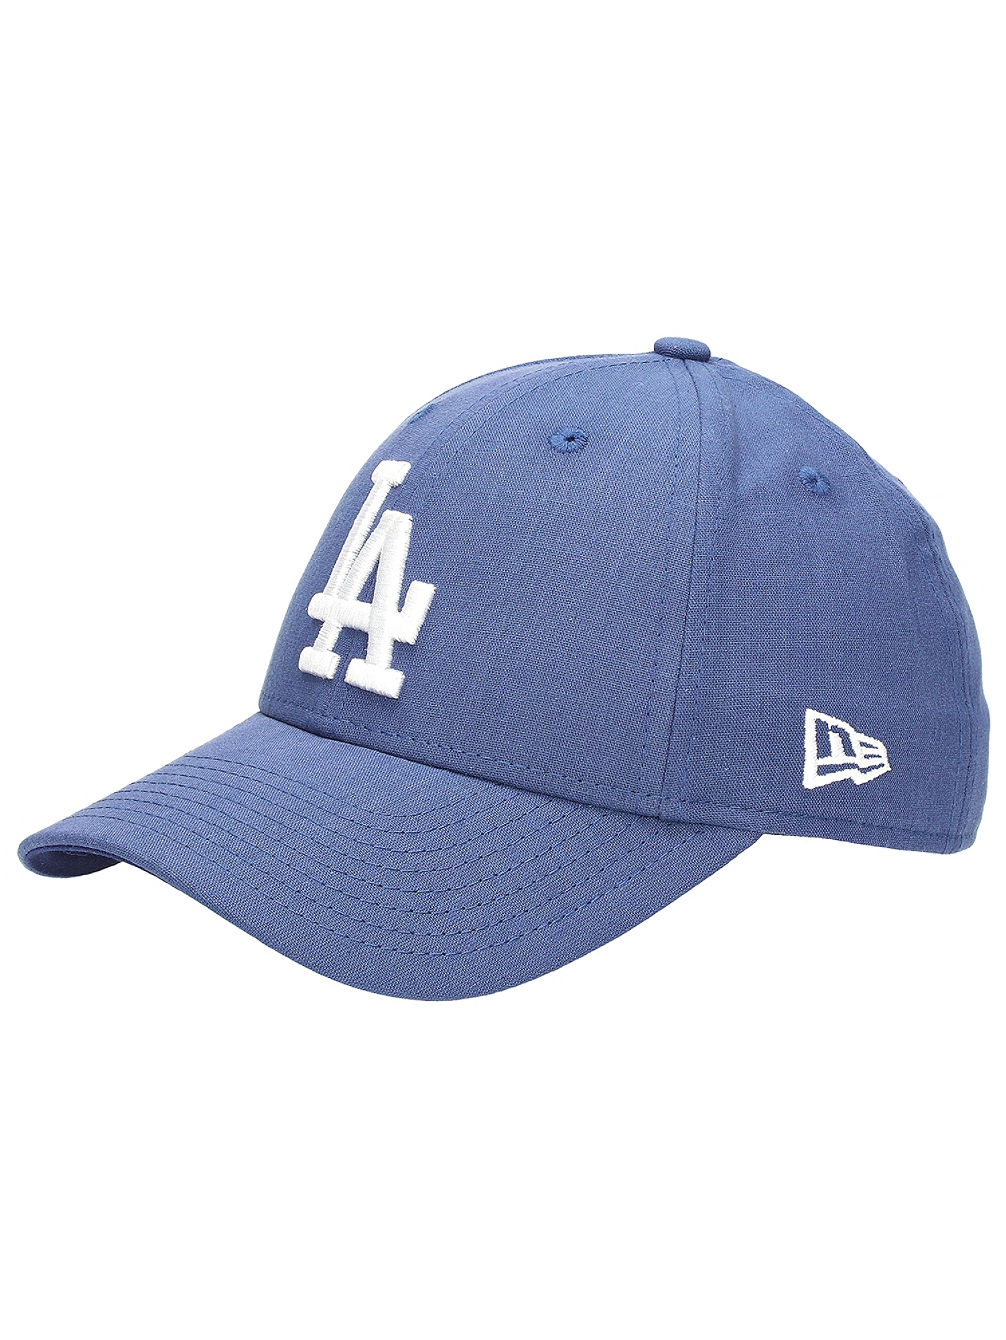 La Dodgers Chambray League Caps